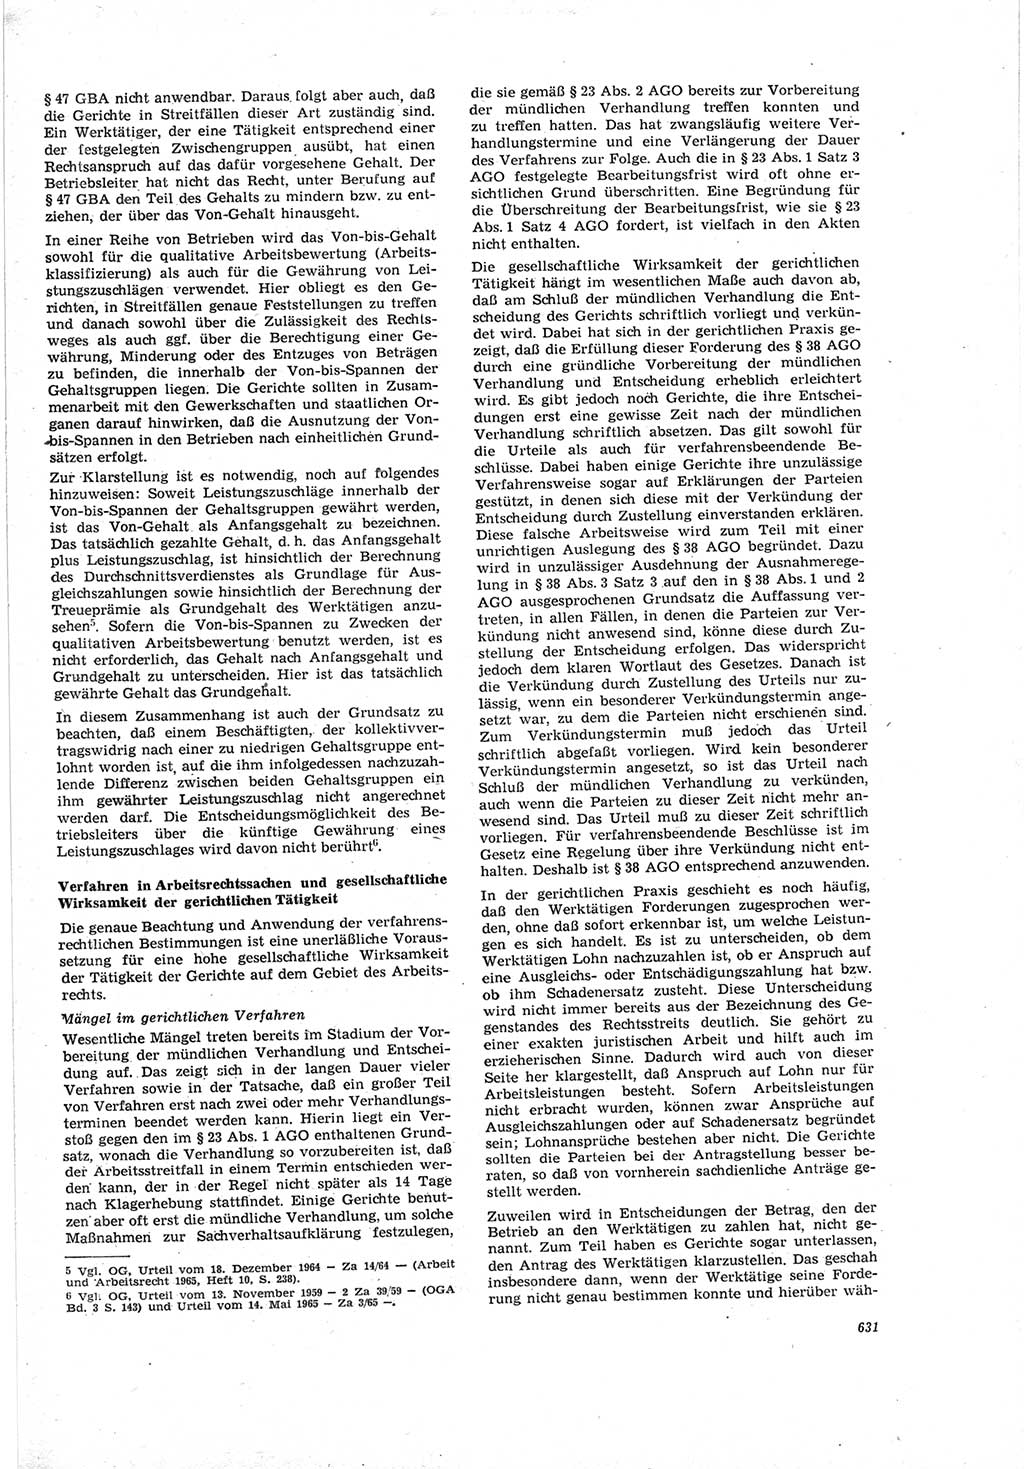 Neue Justiz (NJ), Zeitschrift für Recht und Rechtswissenschaft [Deutsche Demokratische Republik (DDR)], 19. Jahrgang 1965, Seite 631 (NJ DDR 1965, S. 631)